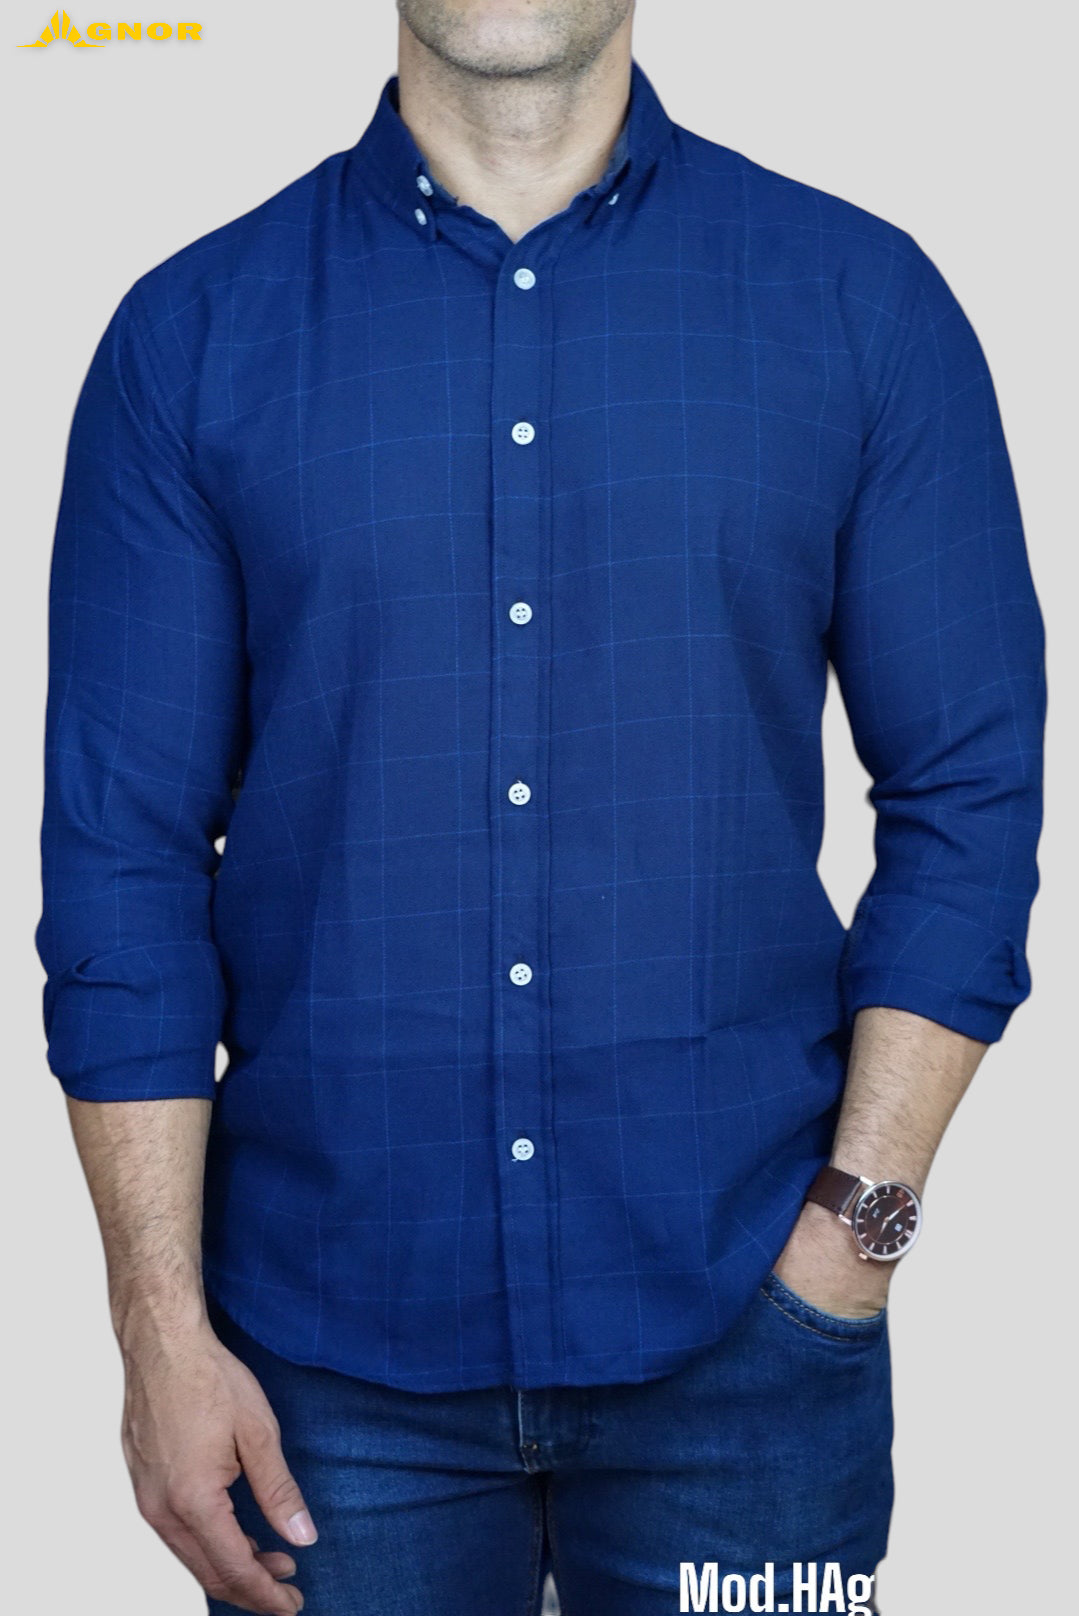 Camisa manga larga Agnor para caballero líneas azul Mod. HAgCamcom